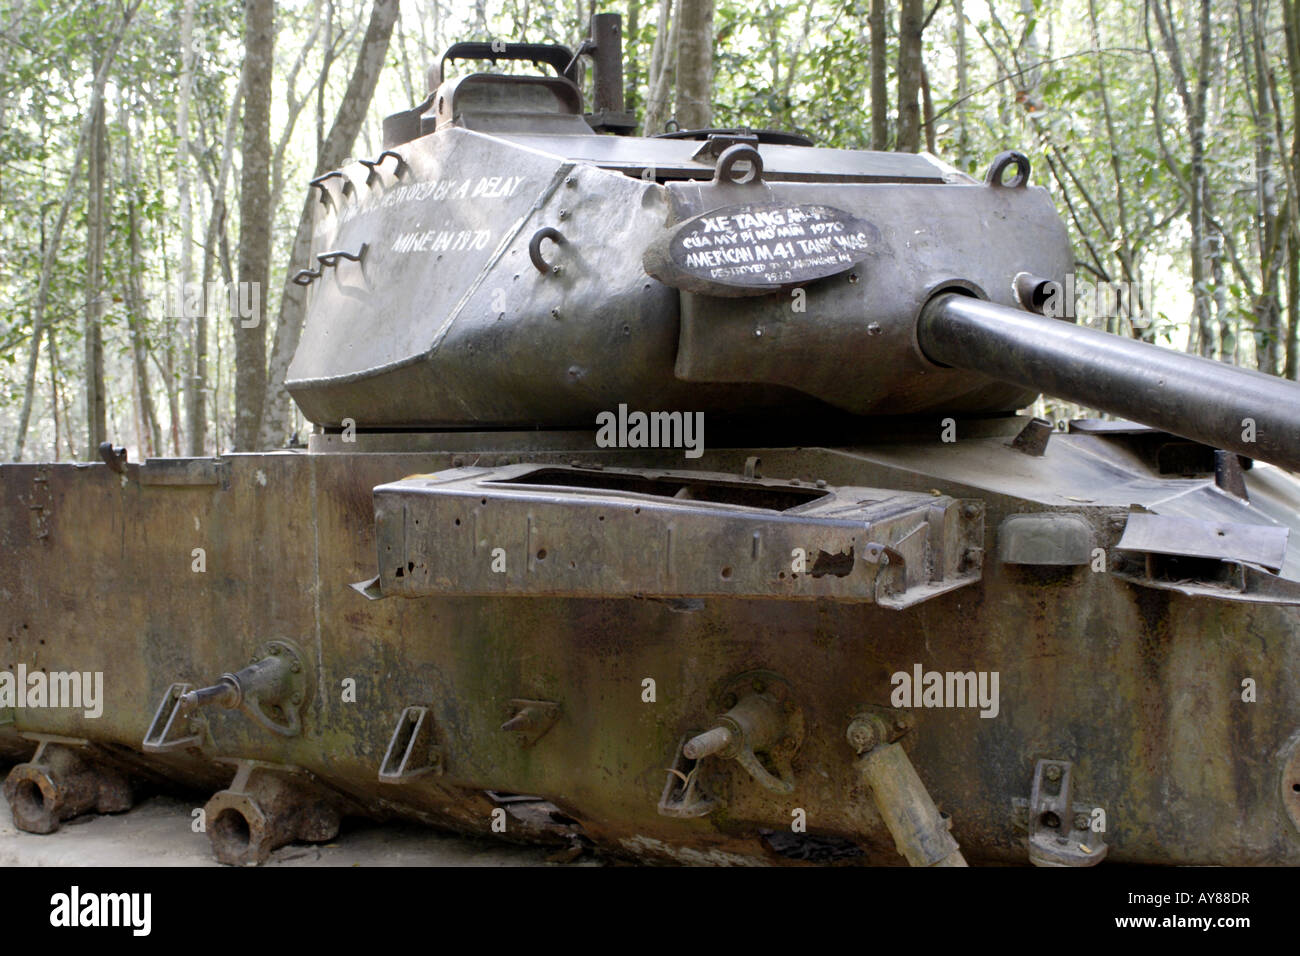 American M-41 Tank destroyed by mine in Vietnam War Cu Chi Vietnam Stock Photo